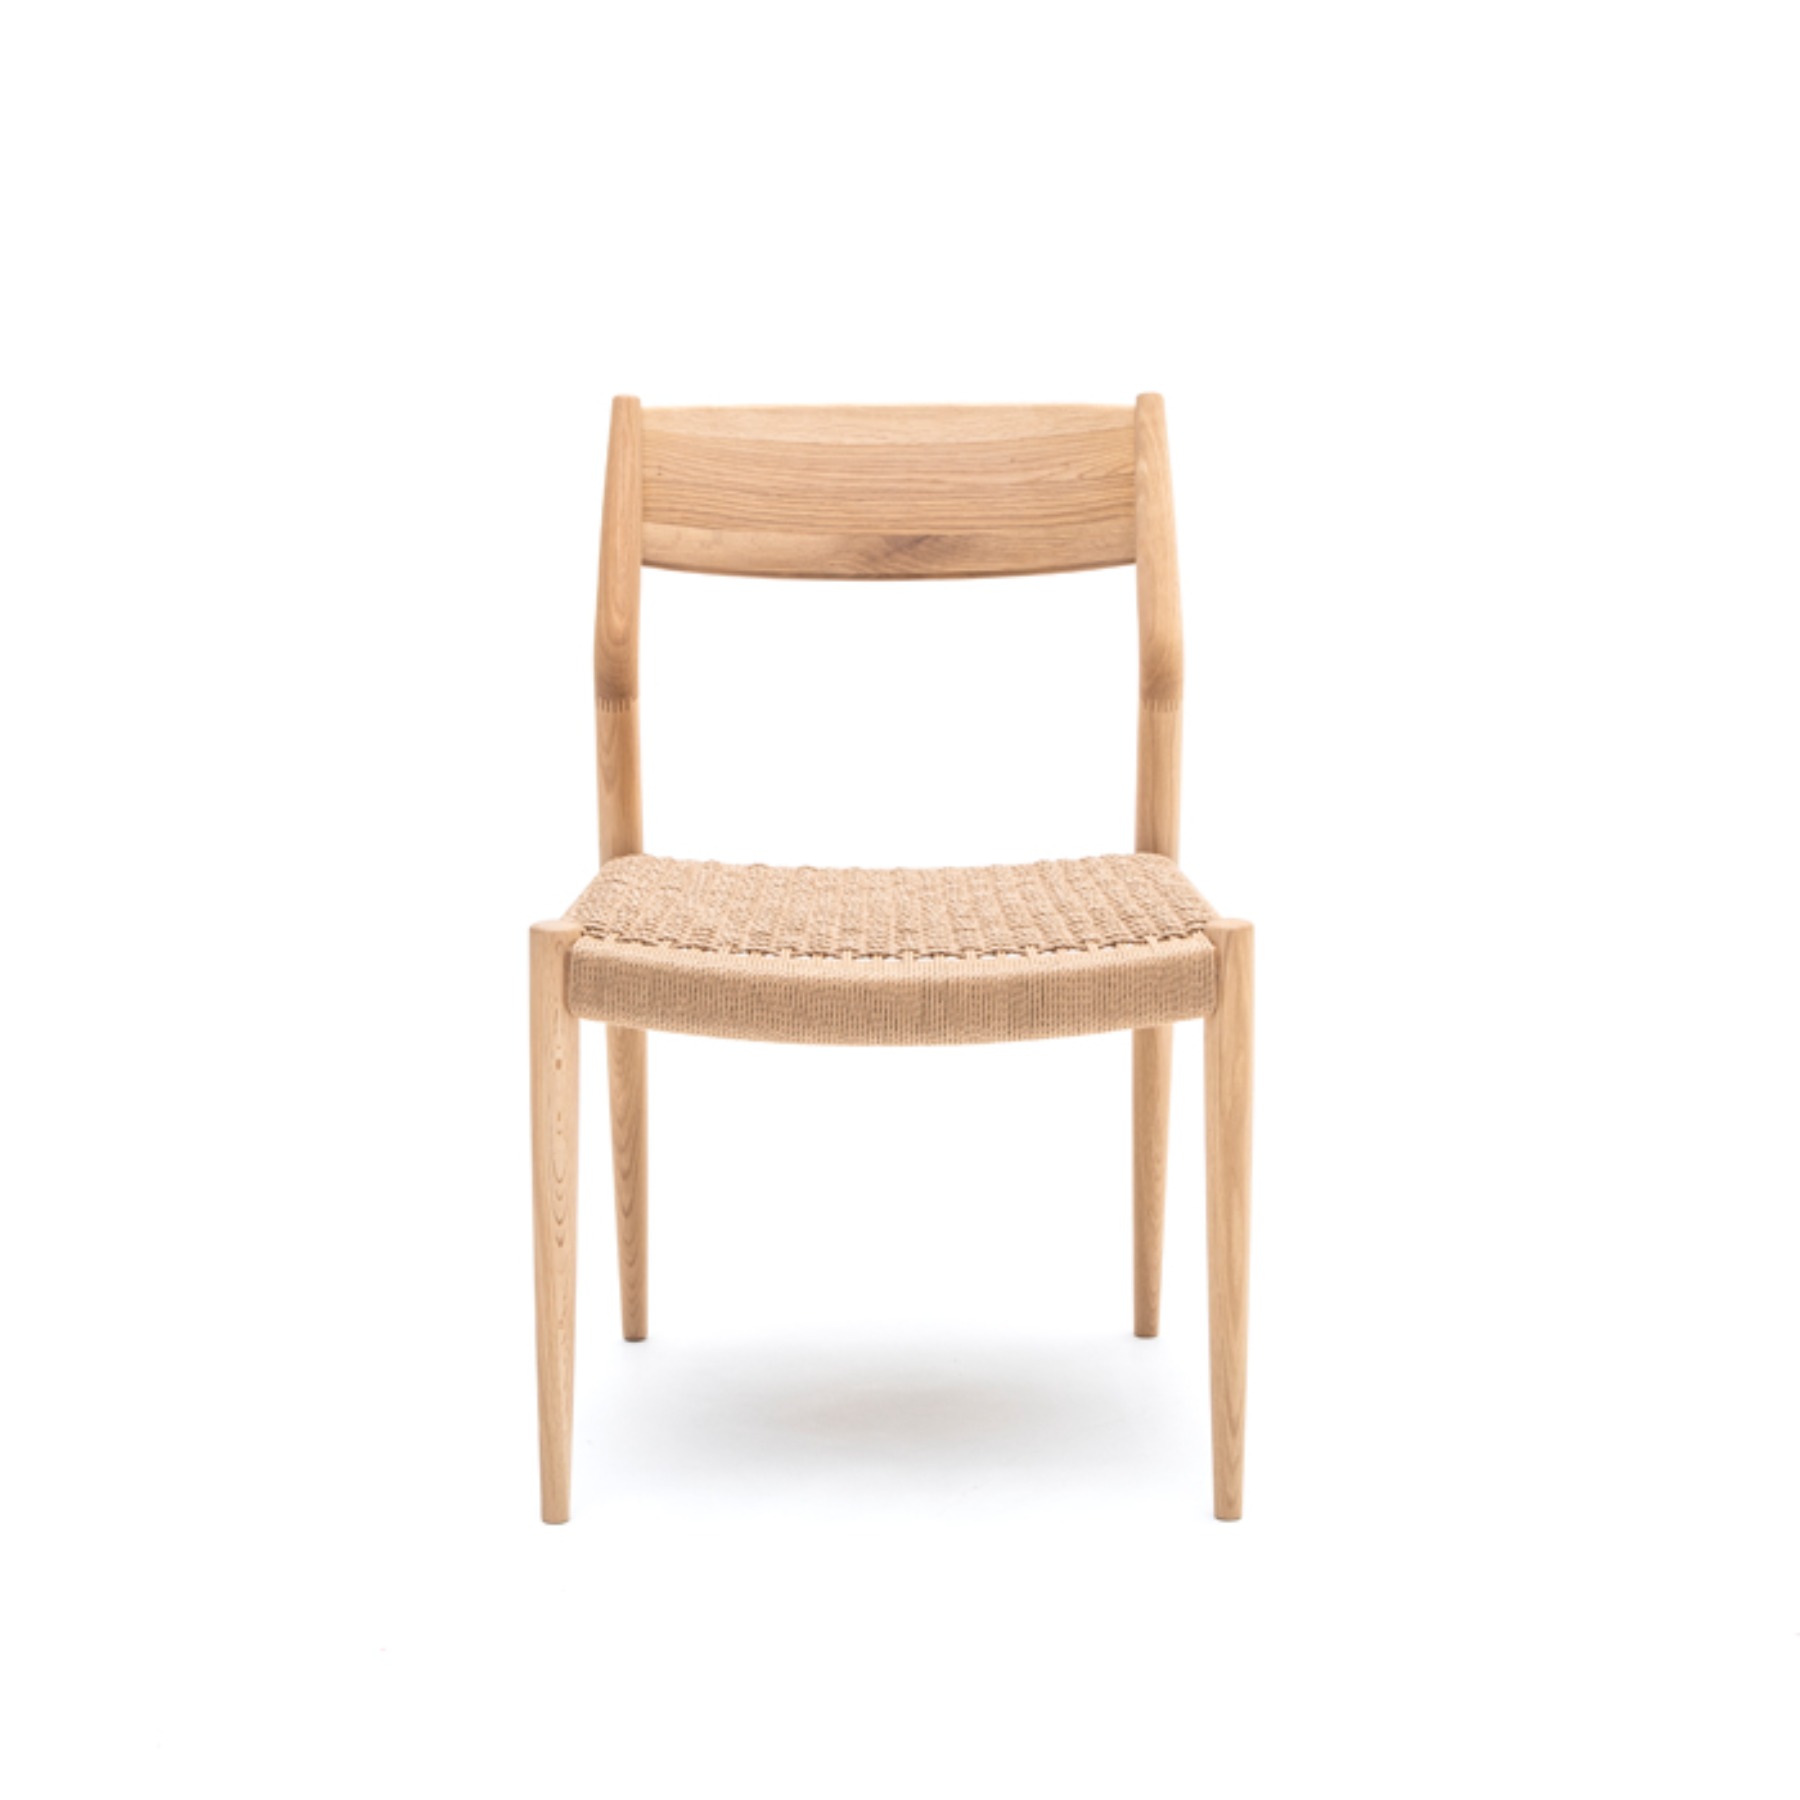 KINUTA N-DC02 Chair (paper cord)키누타 N-DC02 체어 (paper cord)